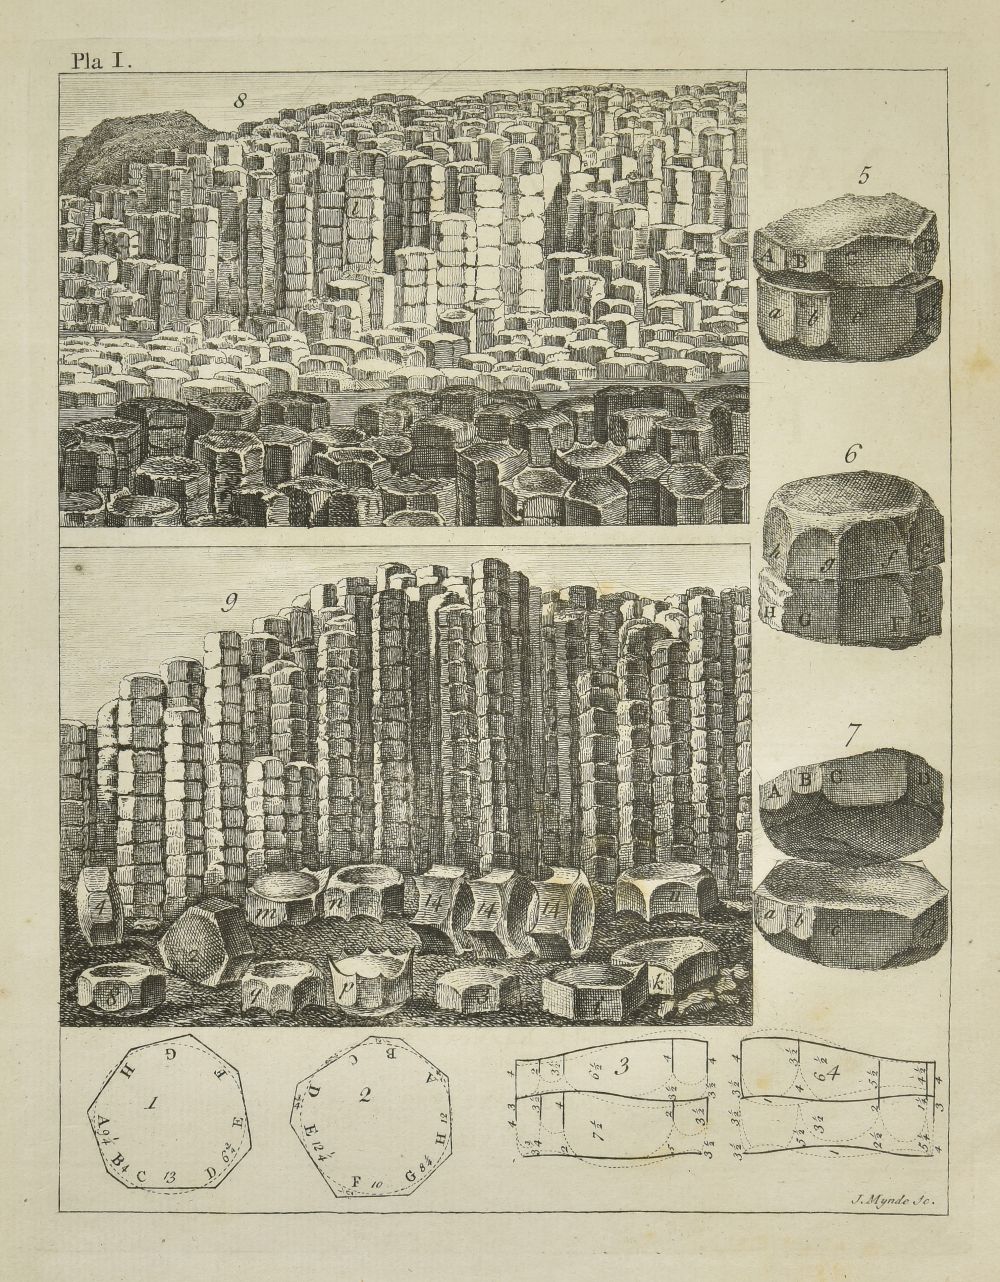 Costa (Emanuel Mendes da). A Natural History of Fossils, 1757